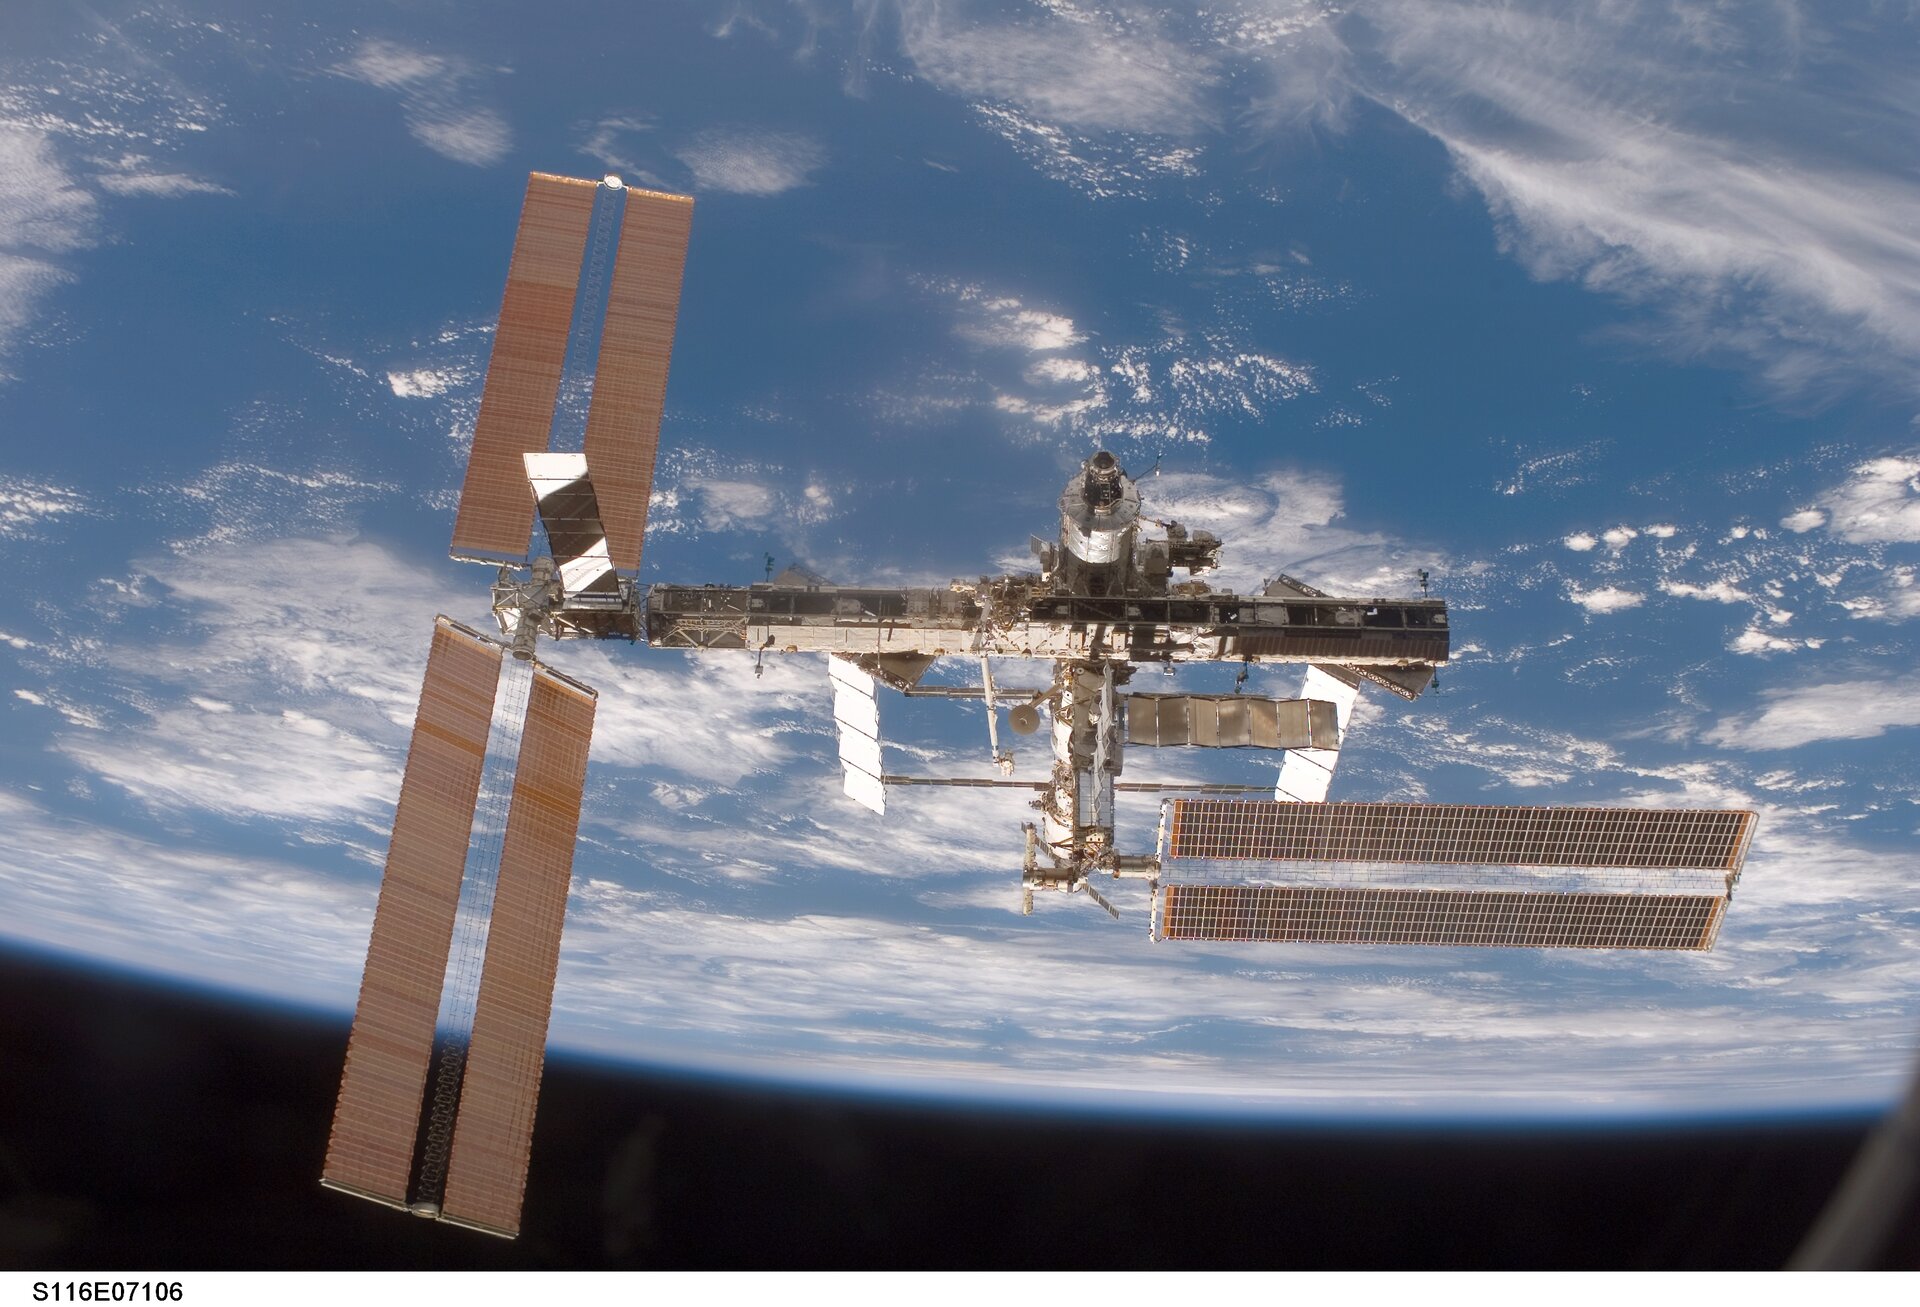 Mezinárodní kosmická stanici po misi STS-116 (prosinec 2006)